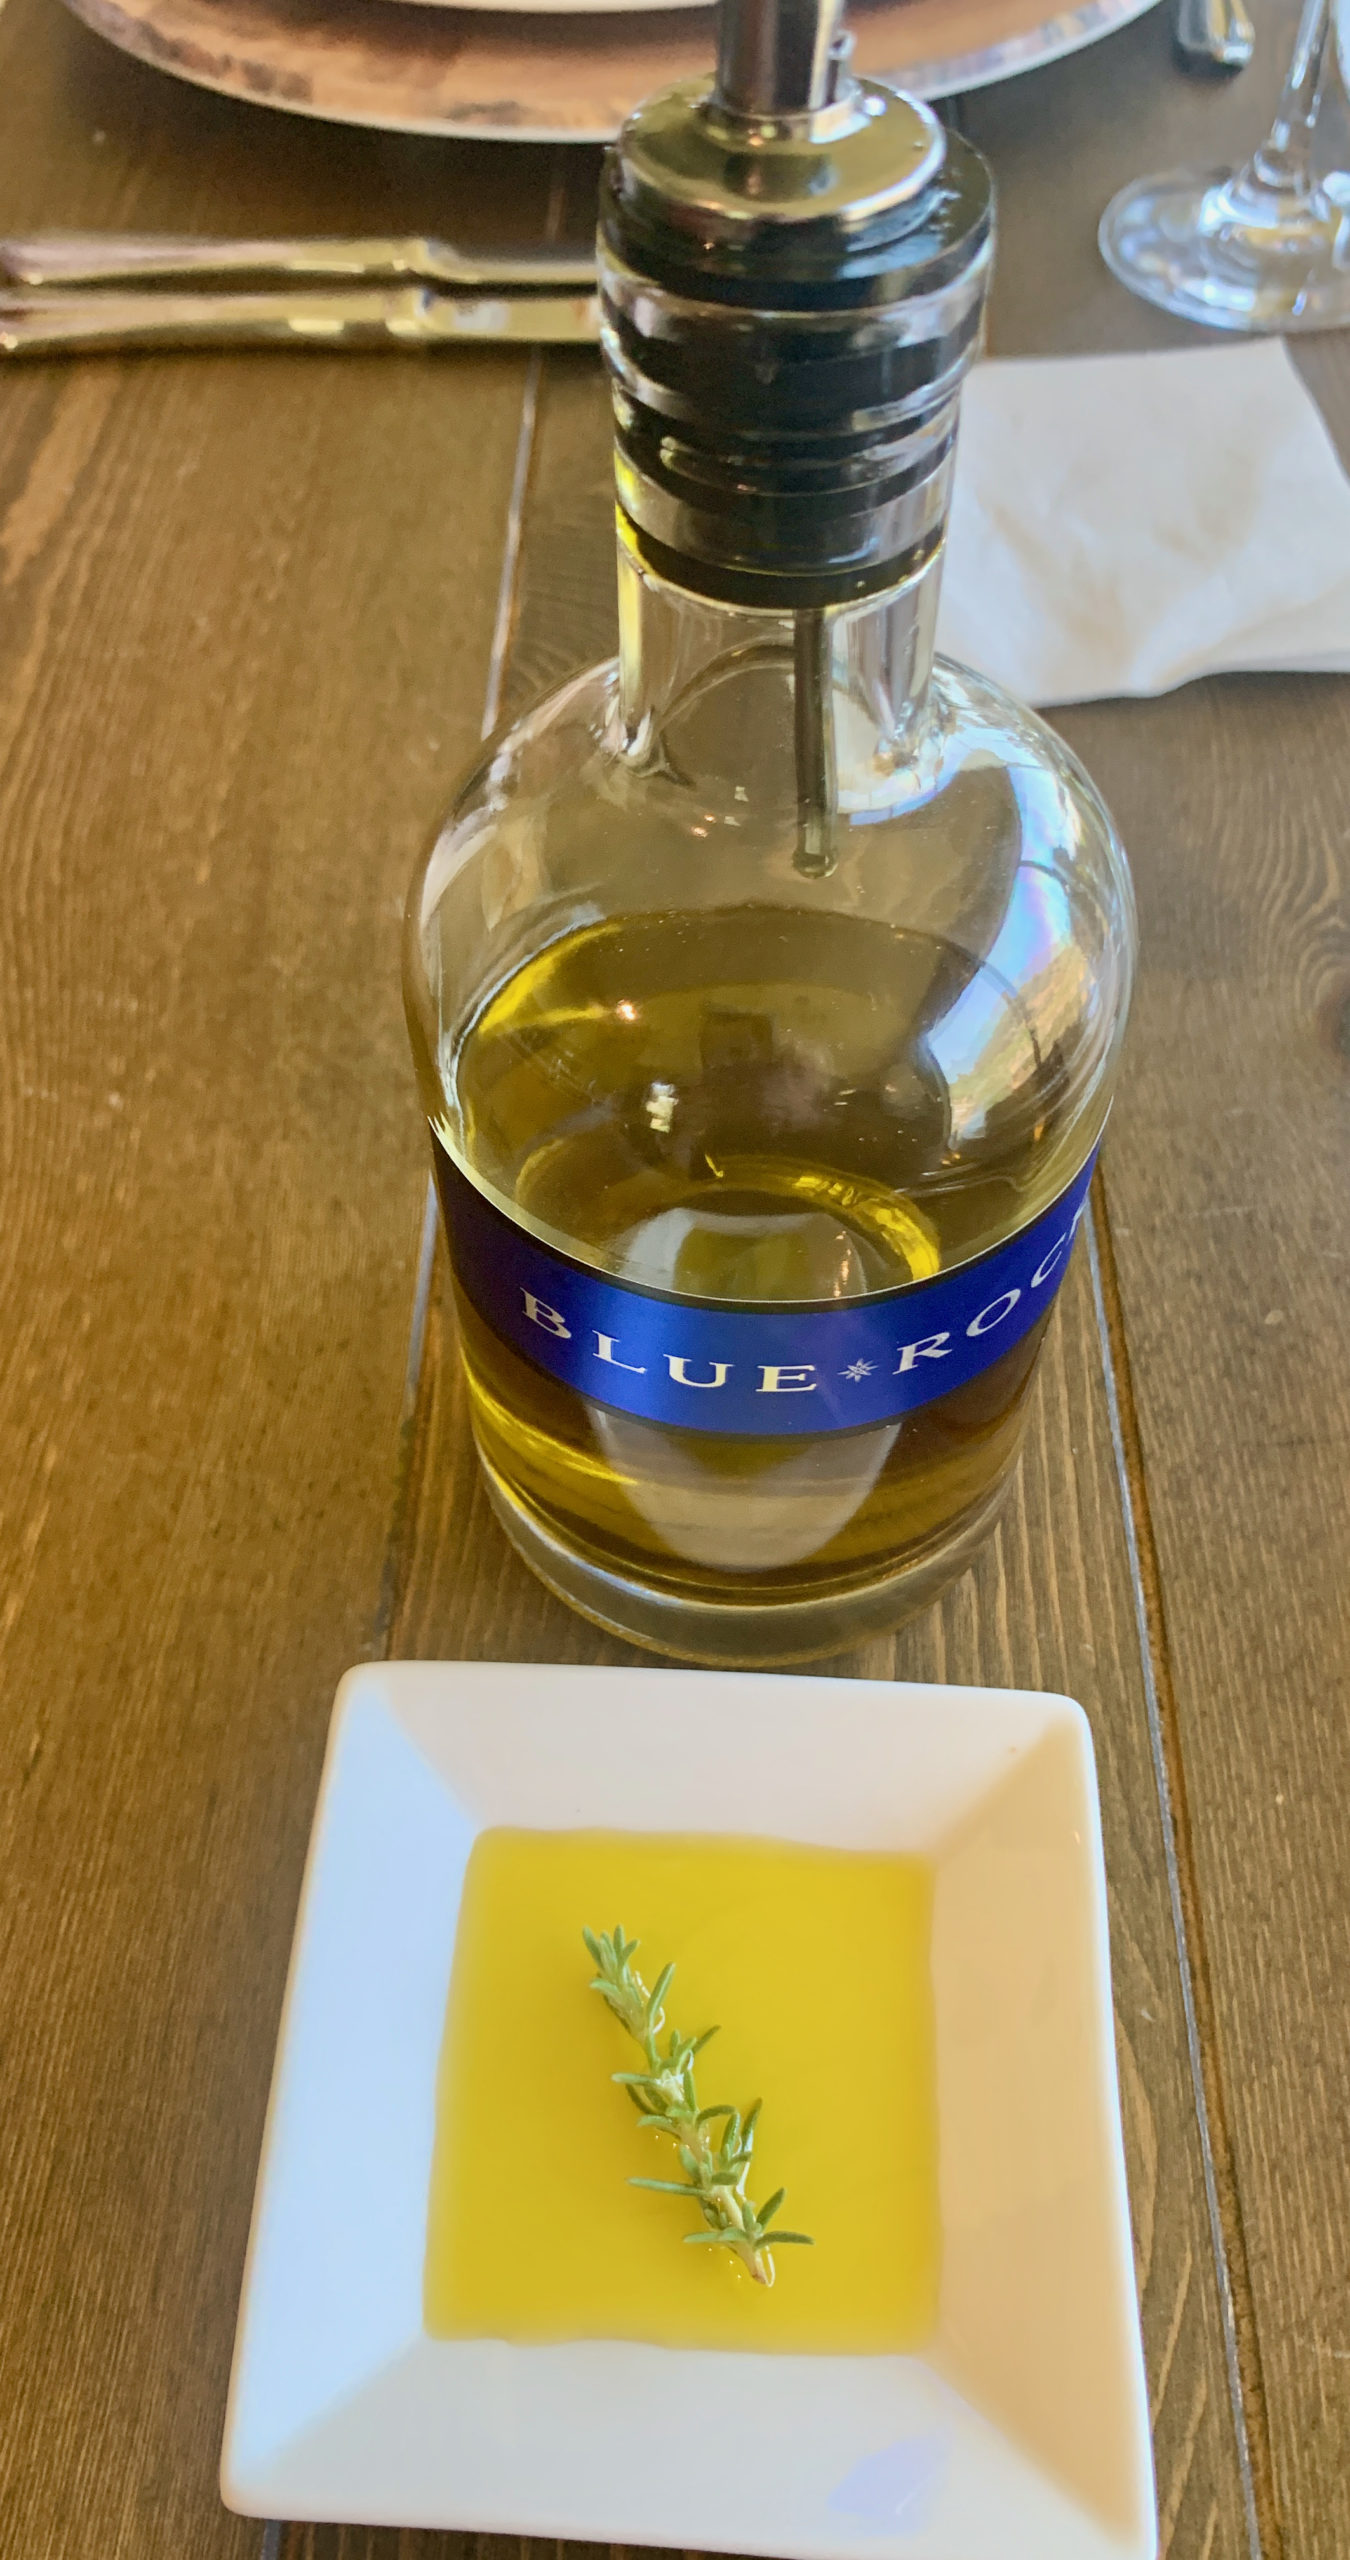 Blue Rock olive oil